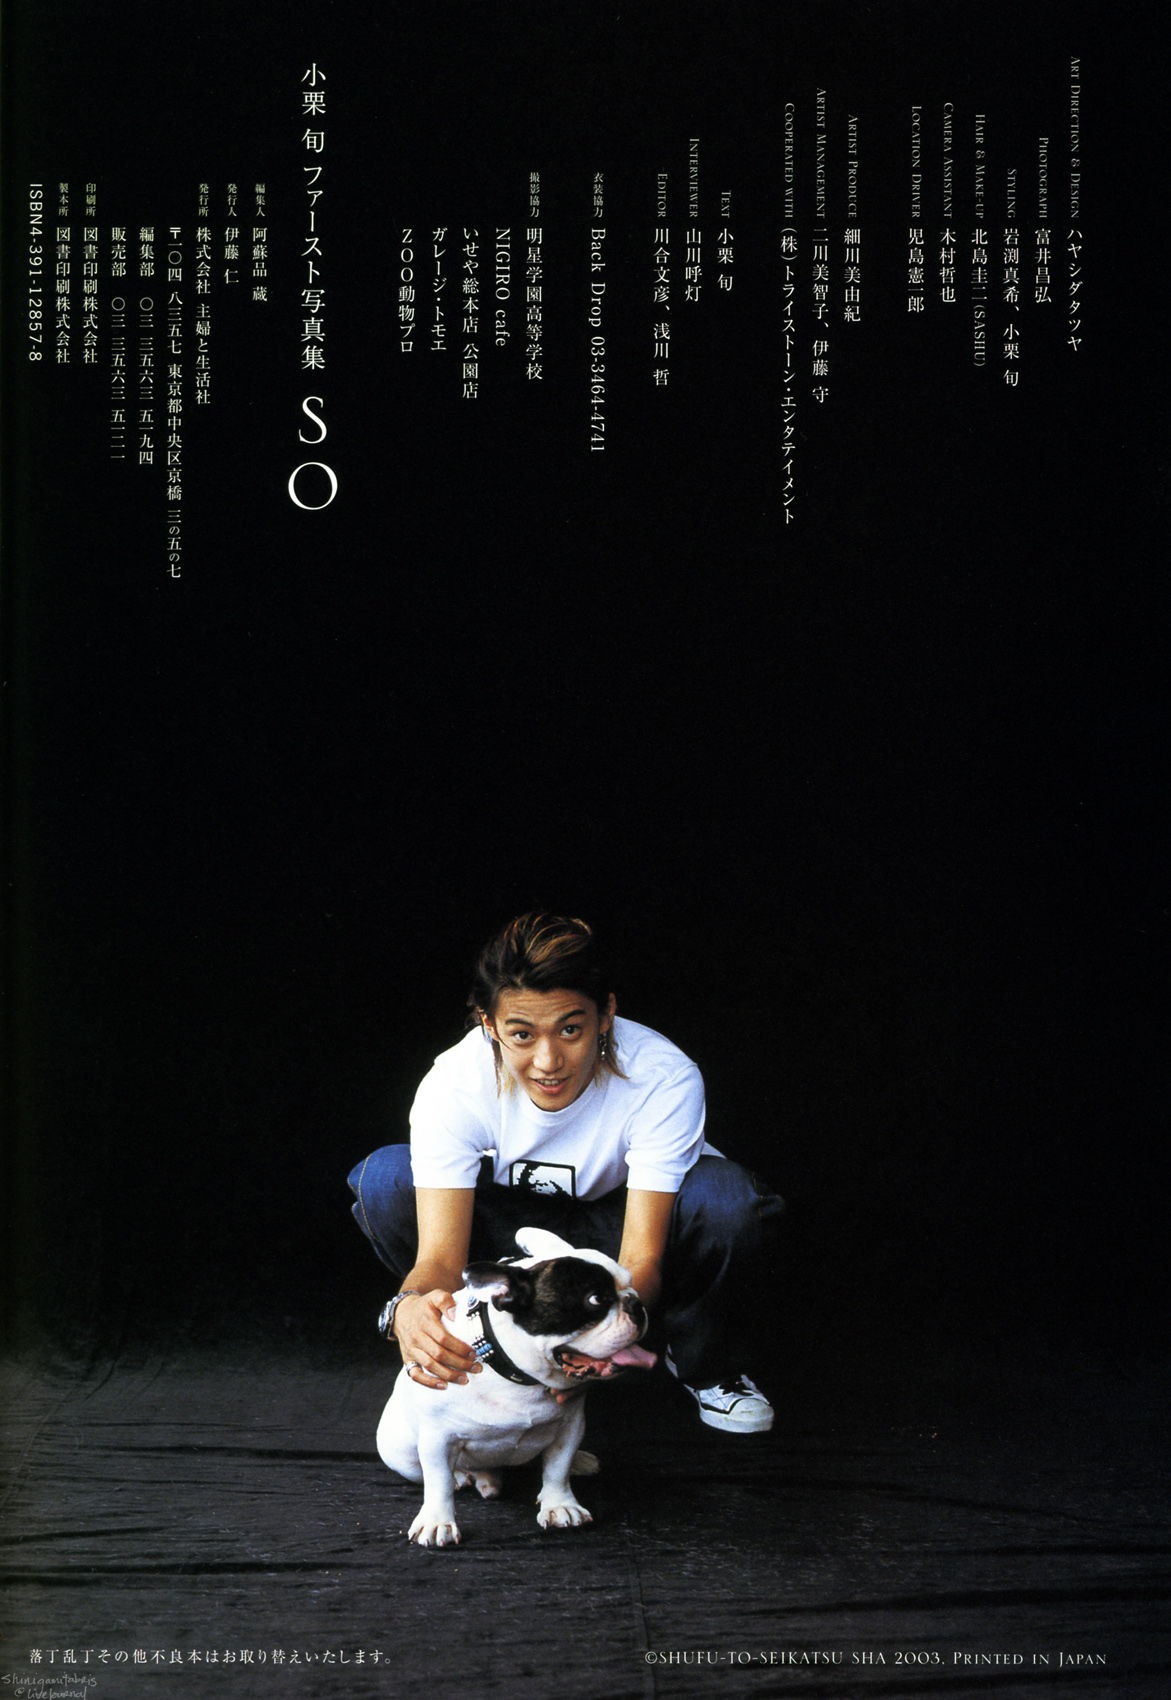 oguri, shun, first, photobook, Japan, Stars, 